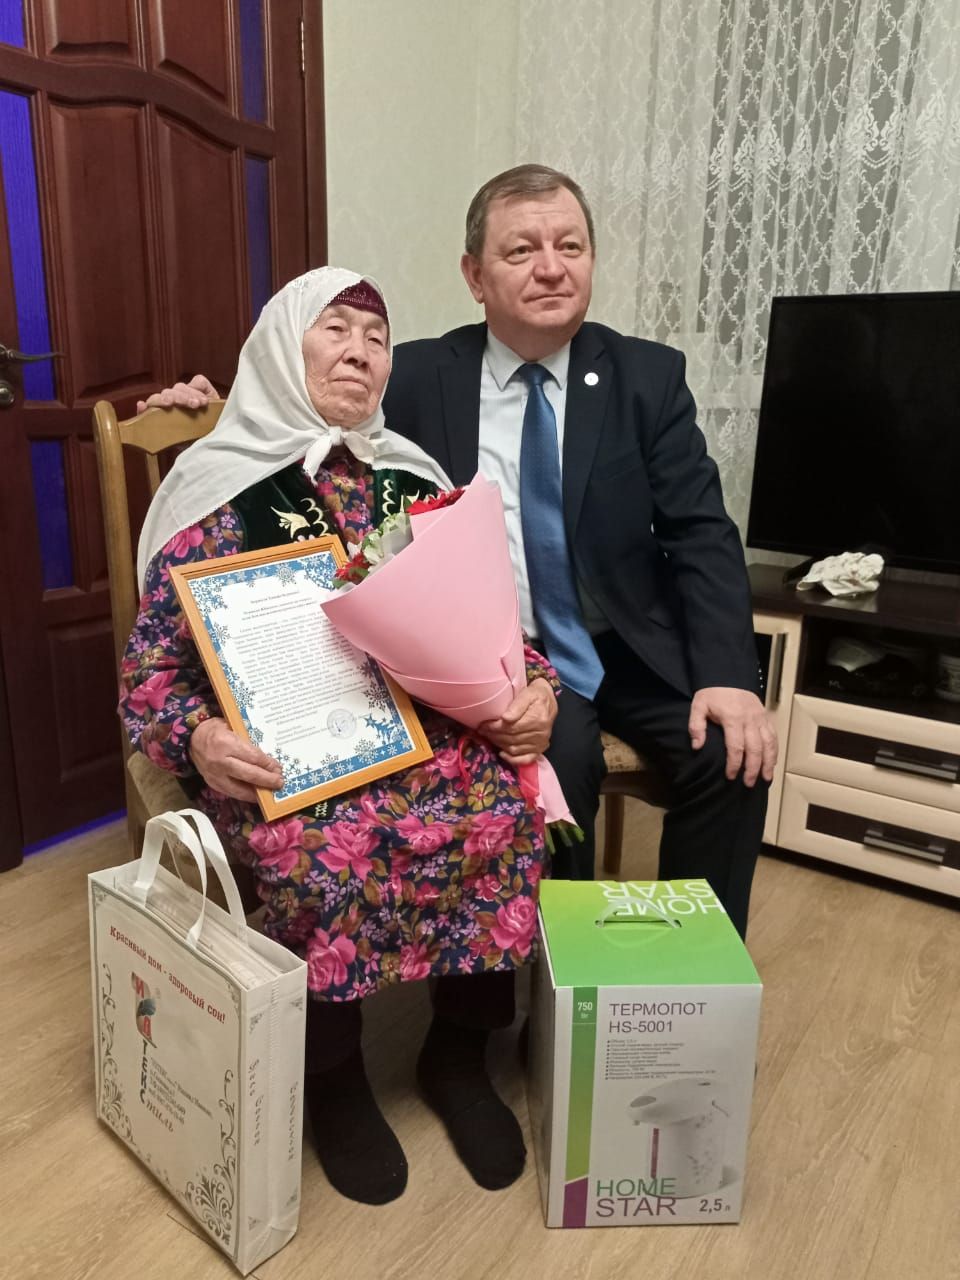 Непростая судьба выпала на долю 90-летней жительницы Кичкальни Ханифы Хасановой